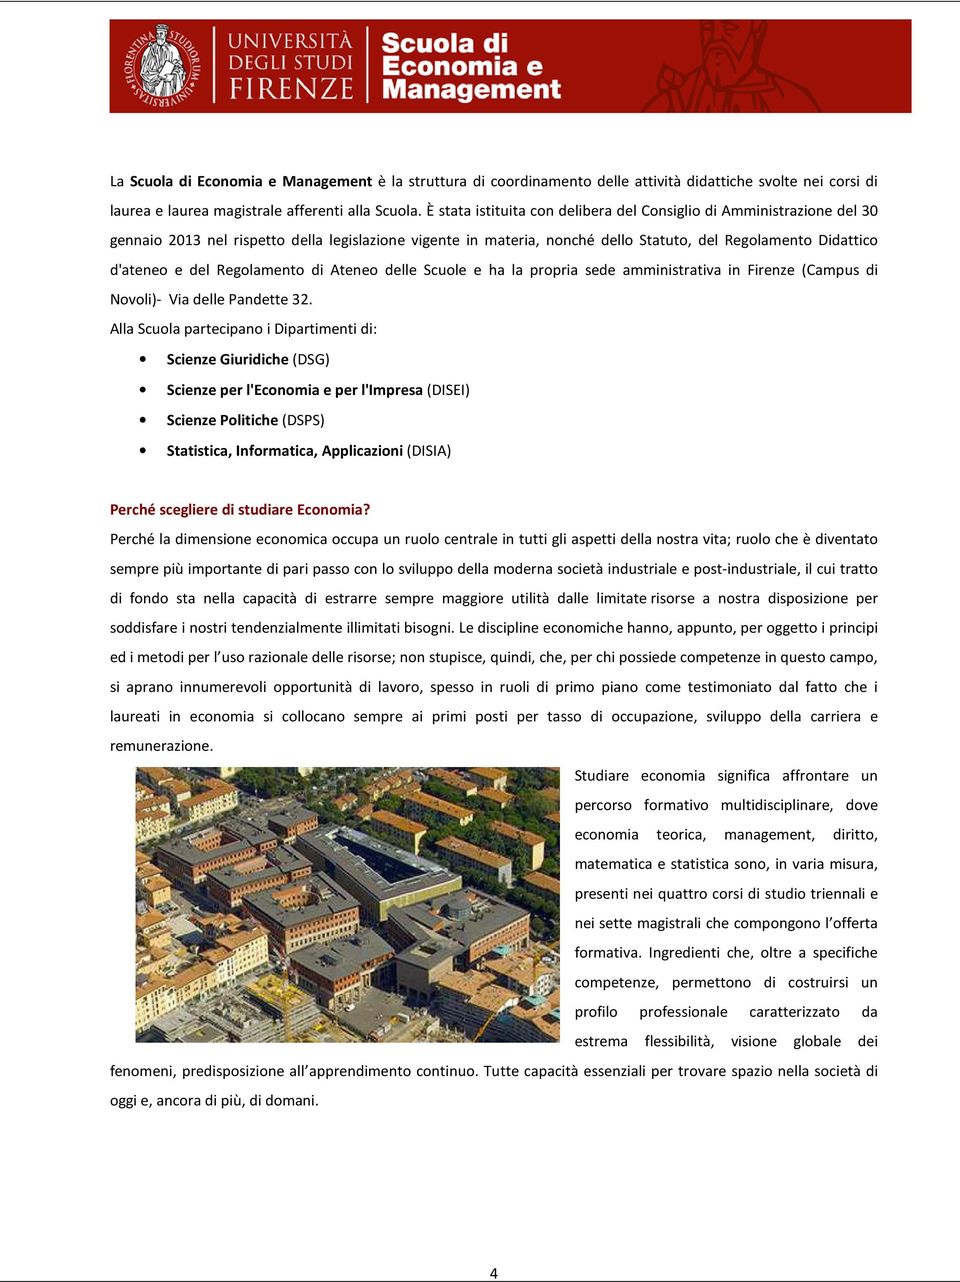 Regolamento di Ateneo delle Scuole e ha la propria sede amministrativa in Firenze (Campus di Novoli)- Via delle Pandette 32.